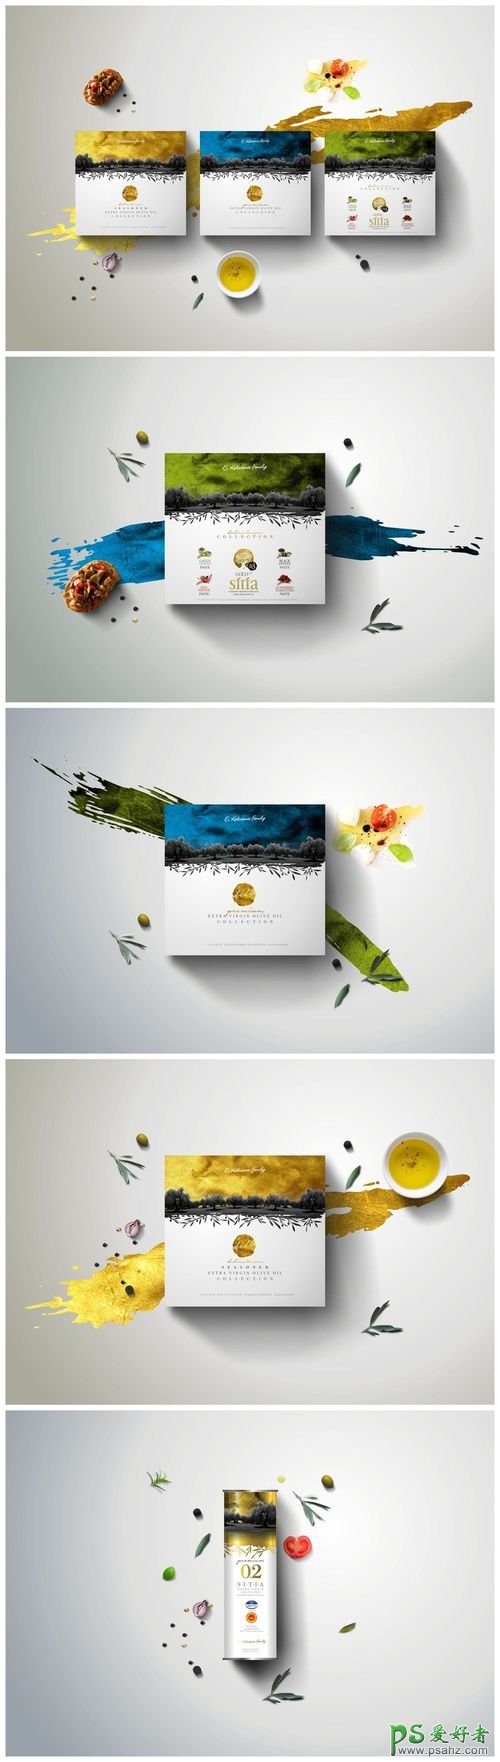 口味独特的茶叶产品包装设计作品，茶类产品平面广告设计。